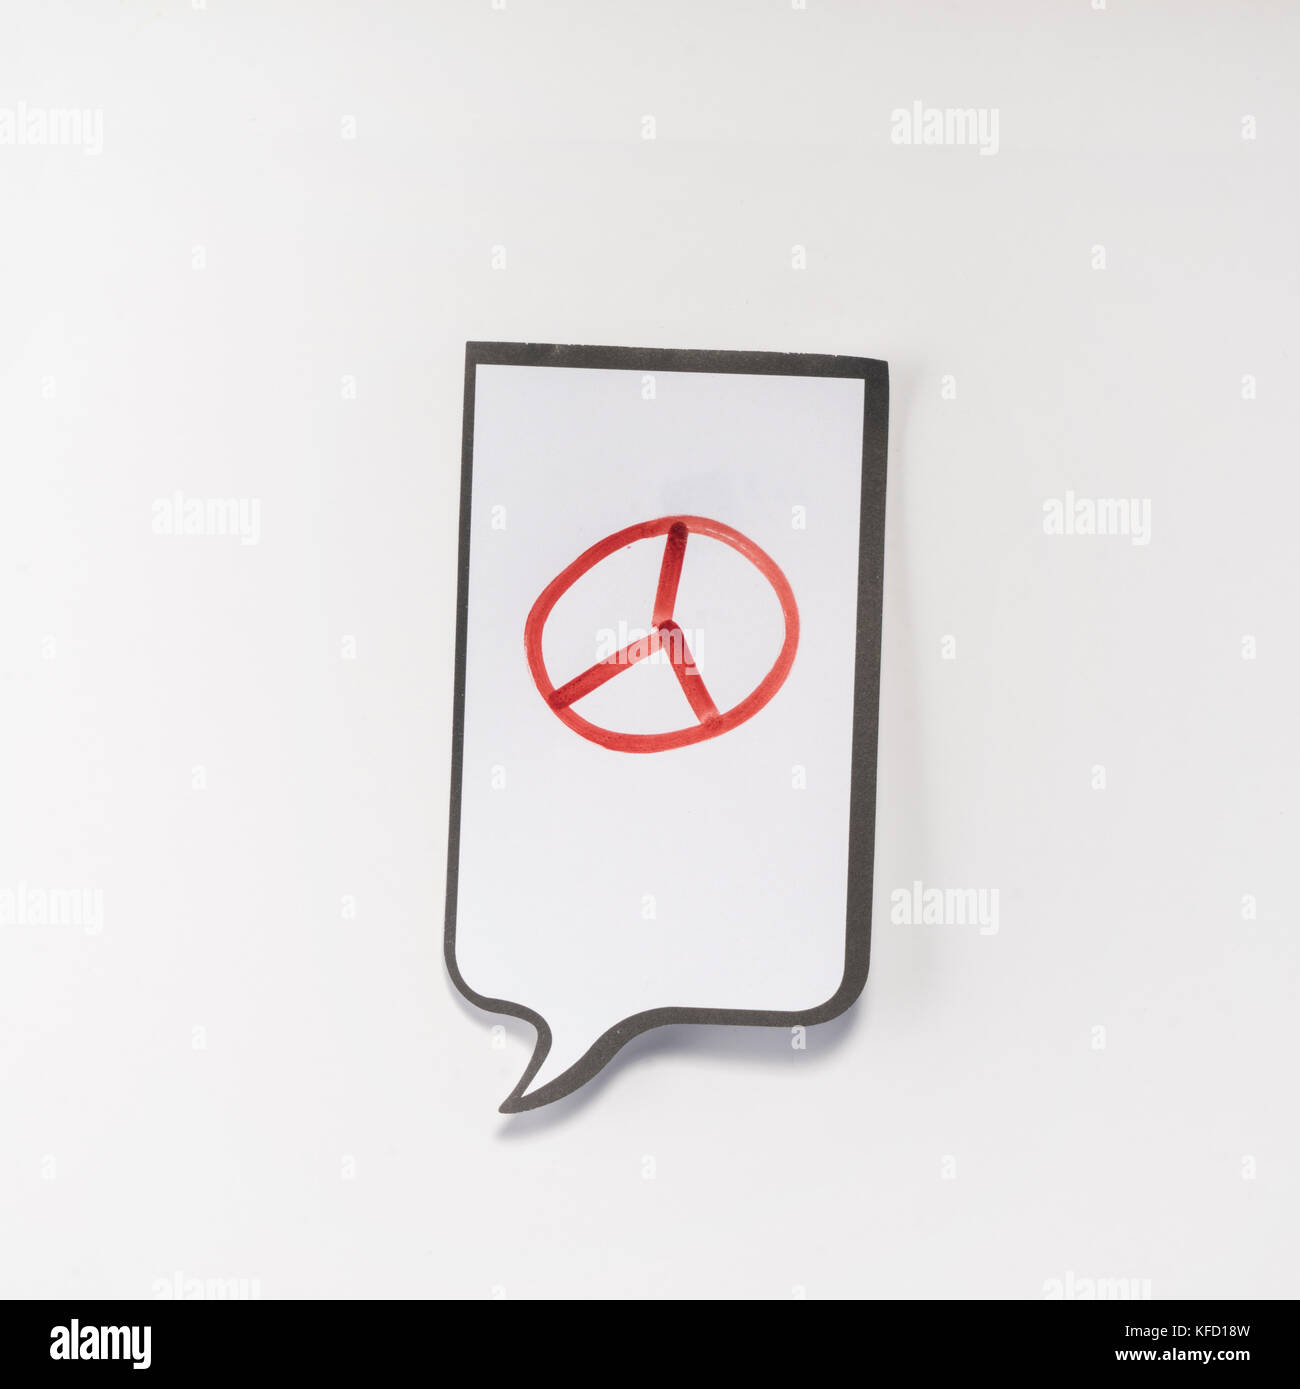 Un bloc-notes blanc ayant la forme d'une bande dessinée avec le symbole du pacifisme Banque D'Images